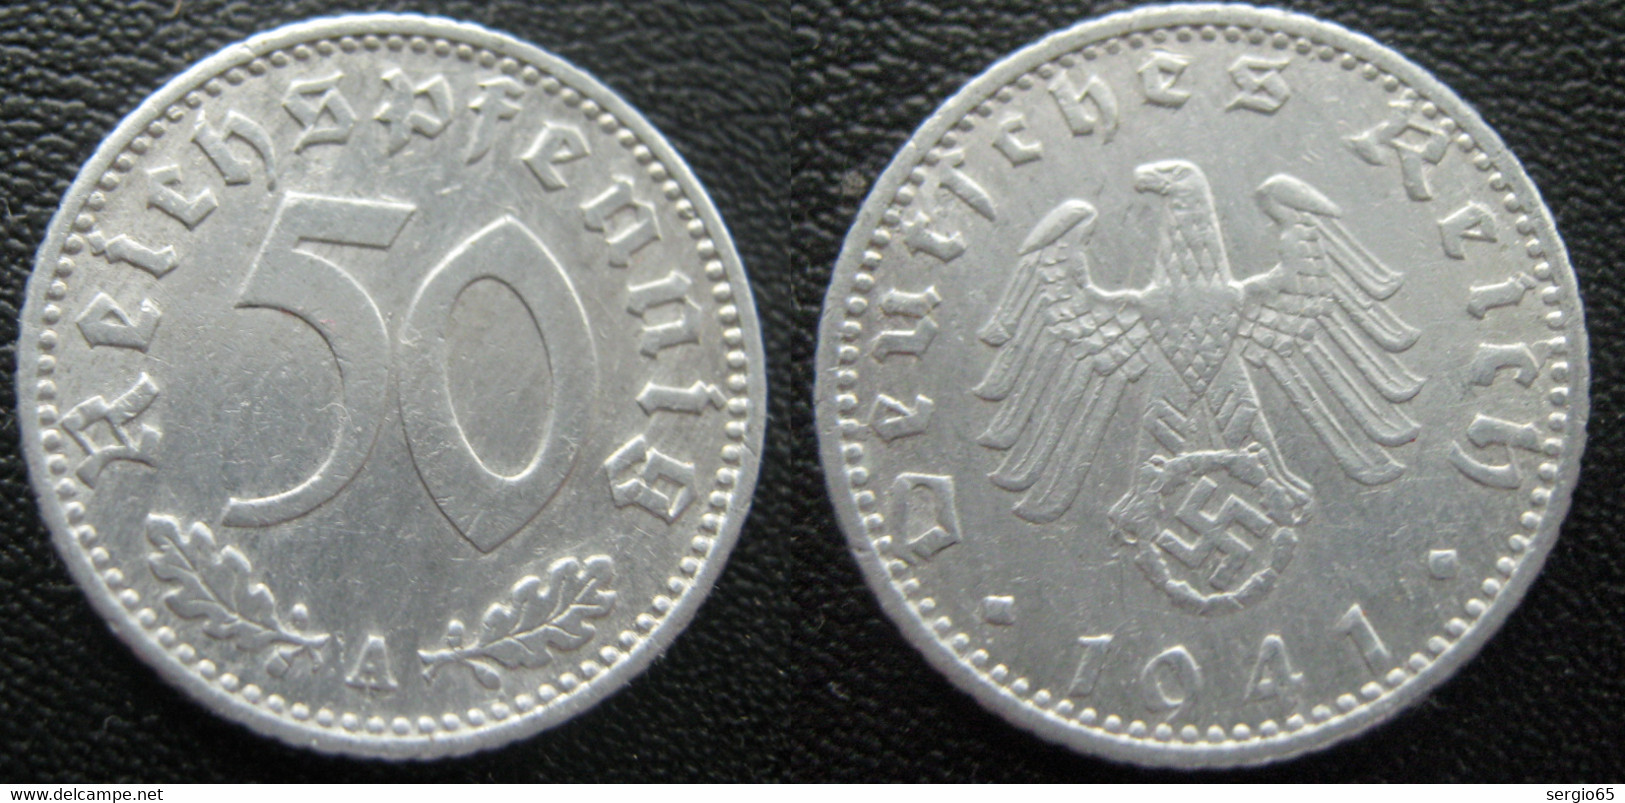 50 Pf -1941 A - 50 Reichspfennig